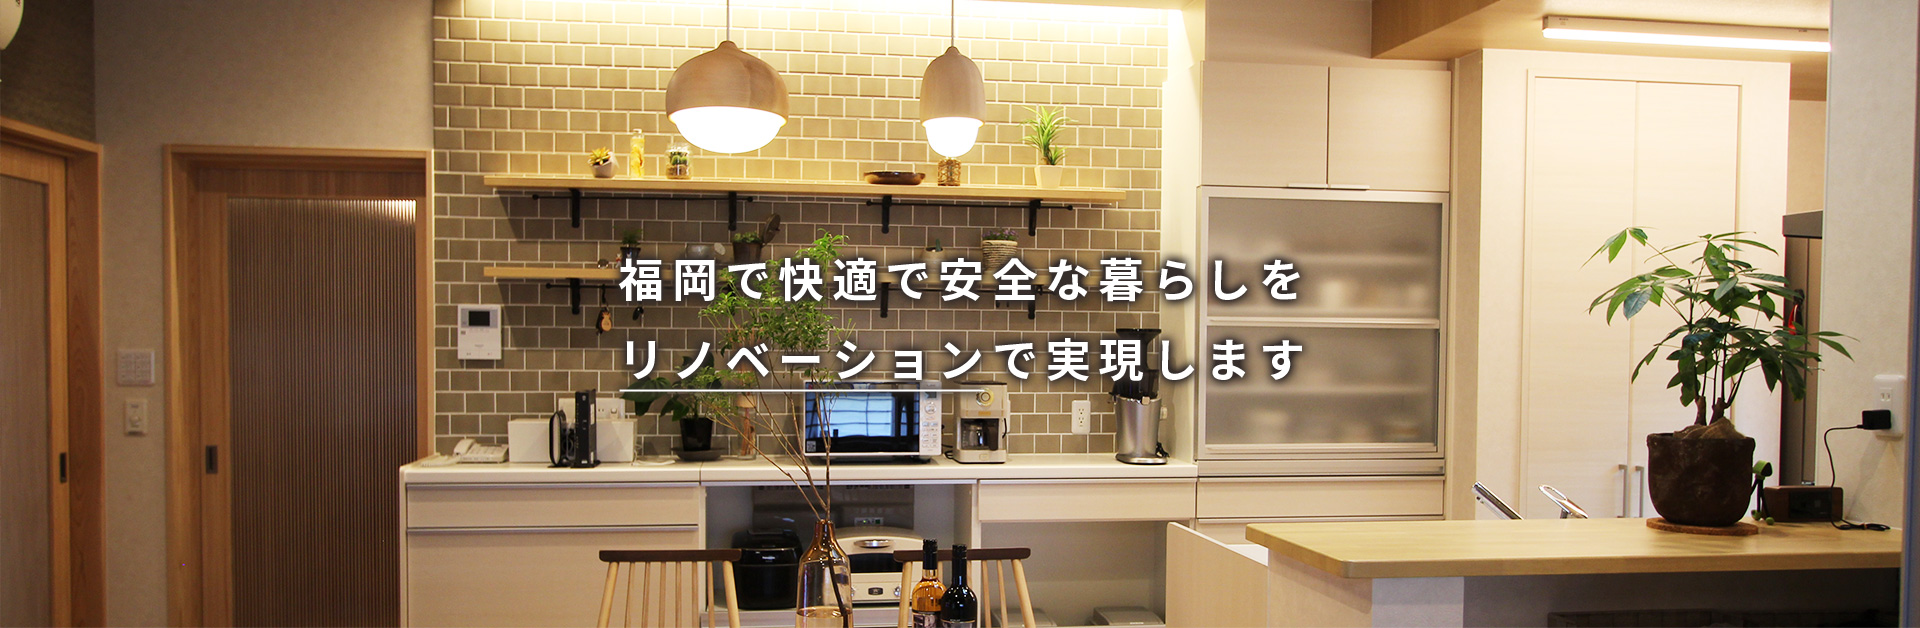 福岡で快適な安全な暮らしをリノベーションで実現します